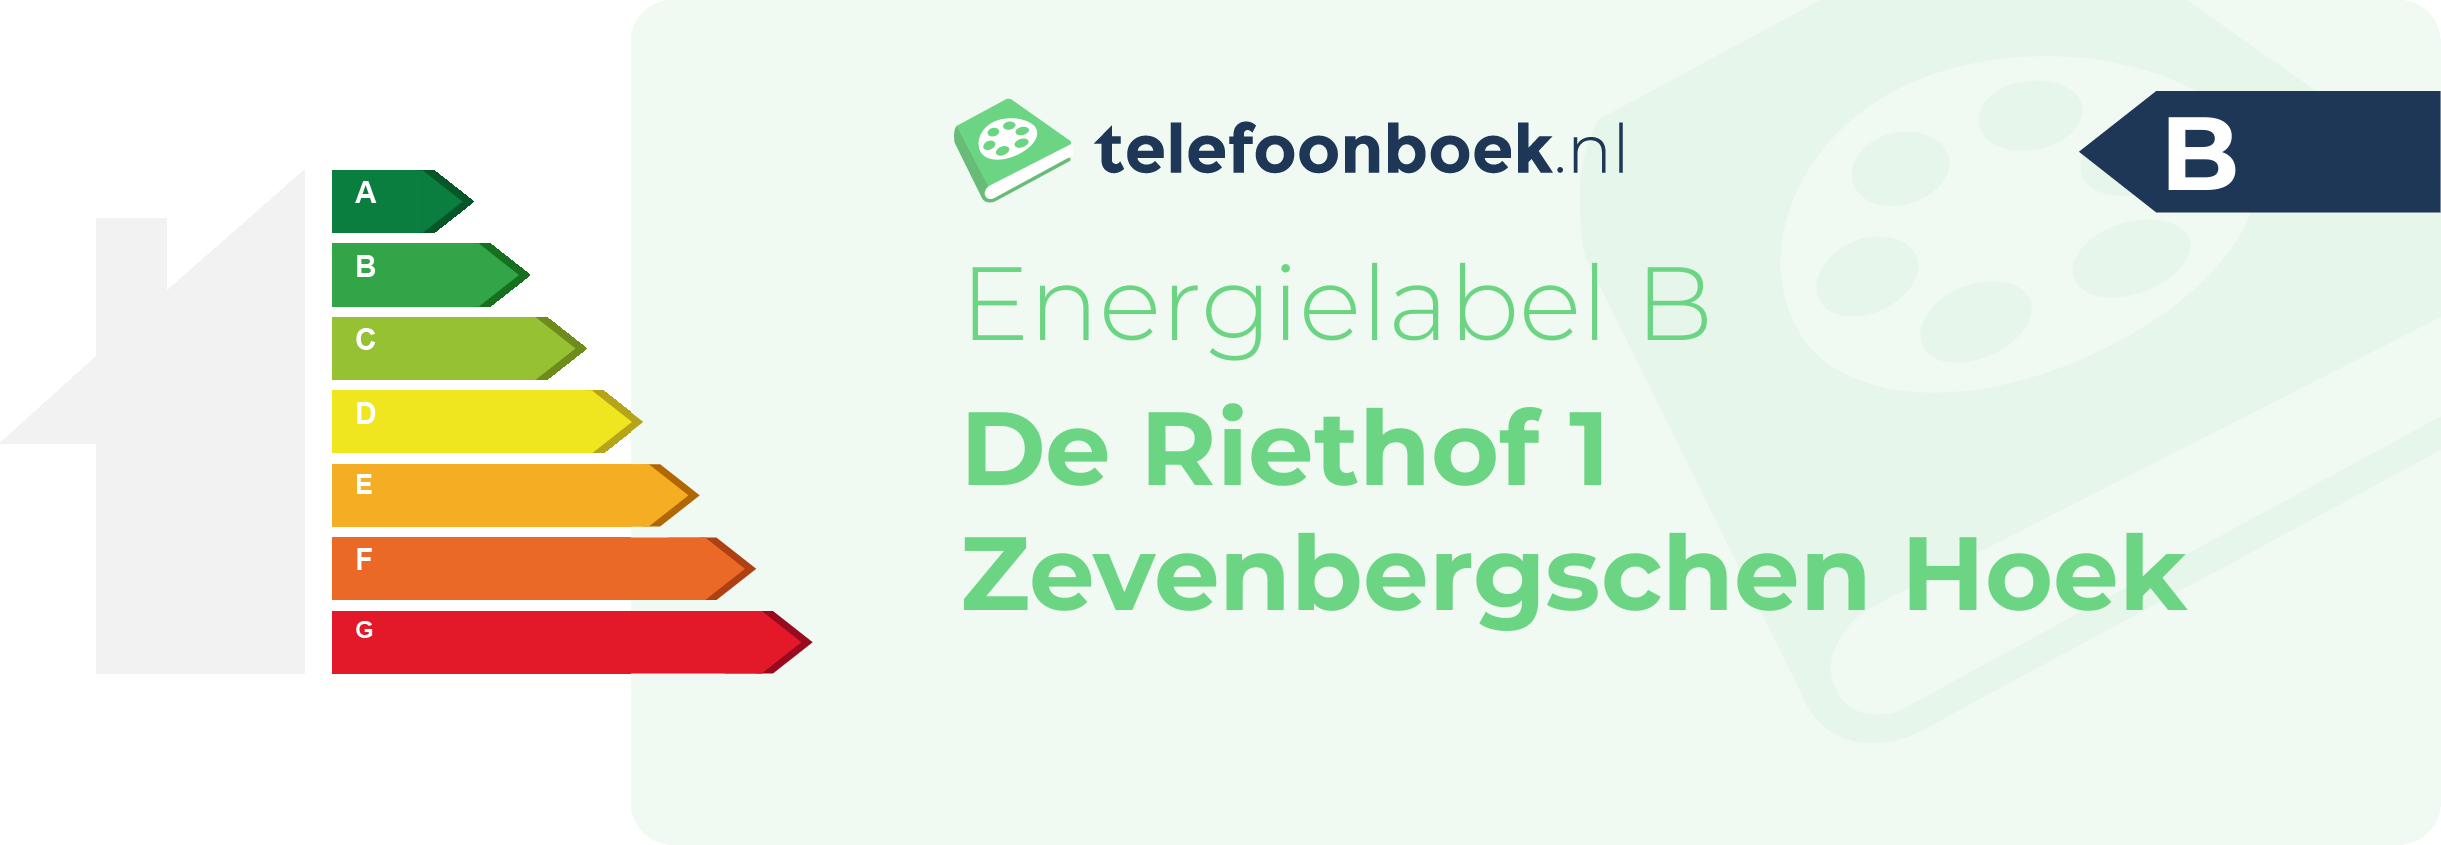 Energielabel De Riethof 1 Zevenbergschen Hoek